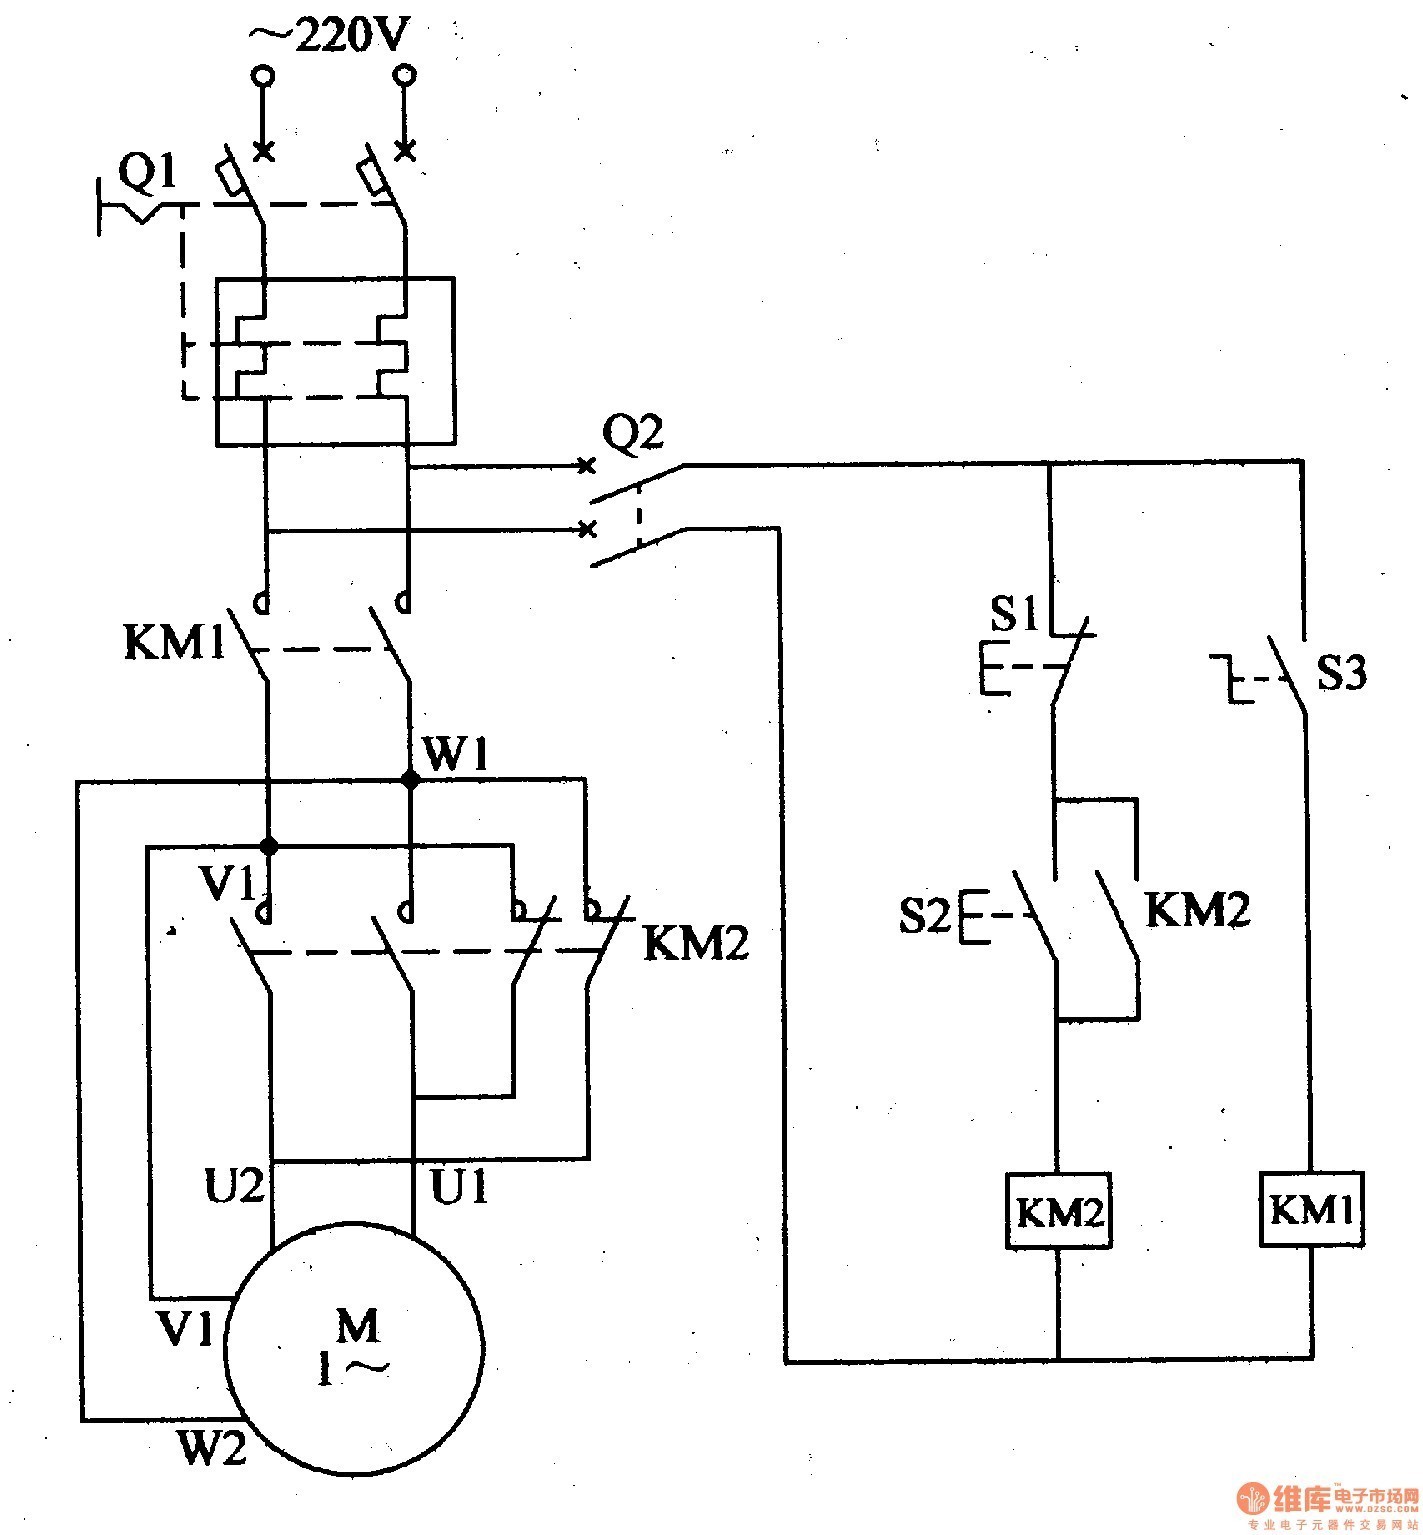 Wiring Diagram for Electric Motor Starter Fresh Wiring Diagram Motor Fresh Single Phase Motor Starter Wiring